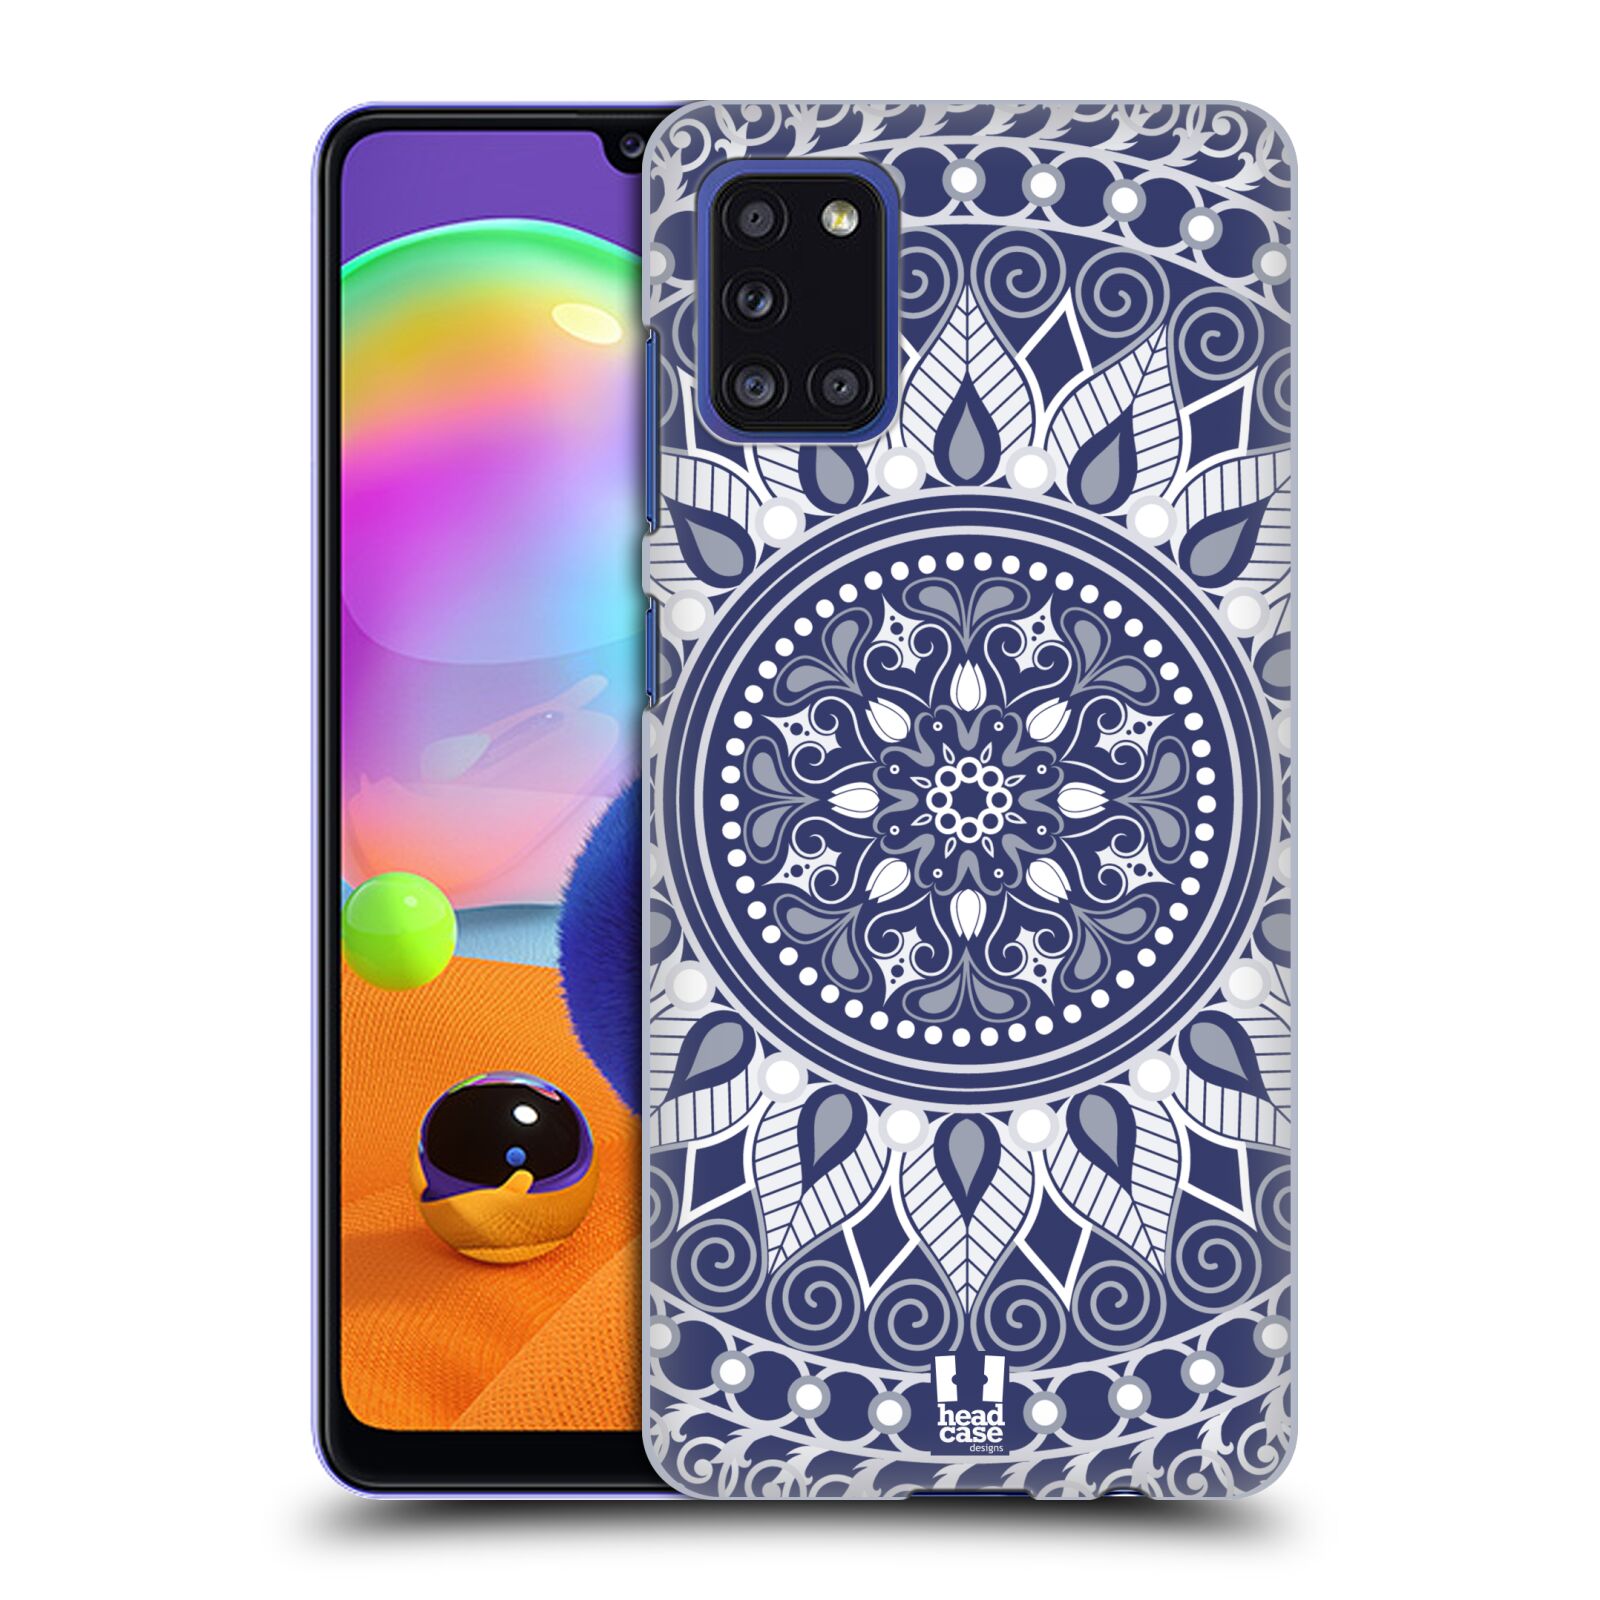 Zadní kryt na mobil Samsung Galaxy A31 vzor Indie Mandala slunce barevný motiv MODRÁ